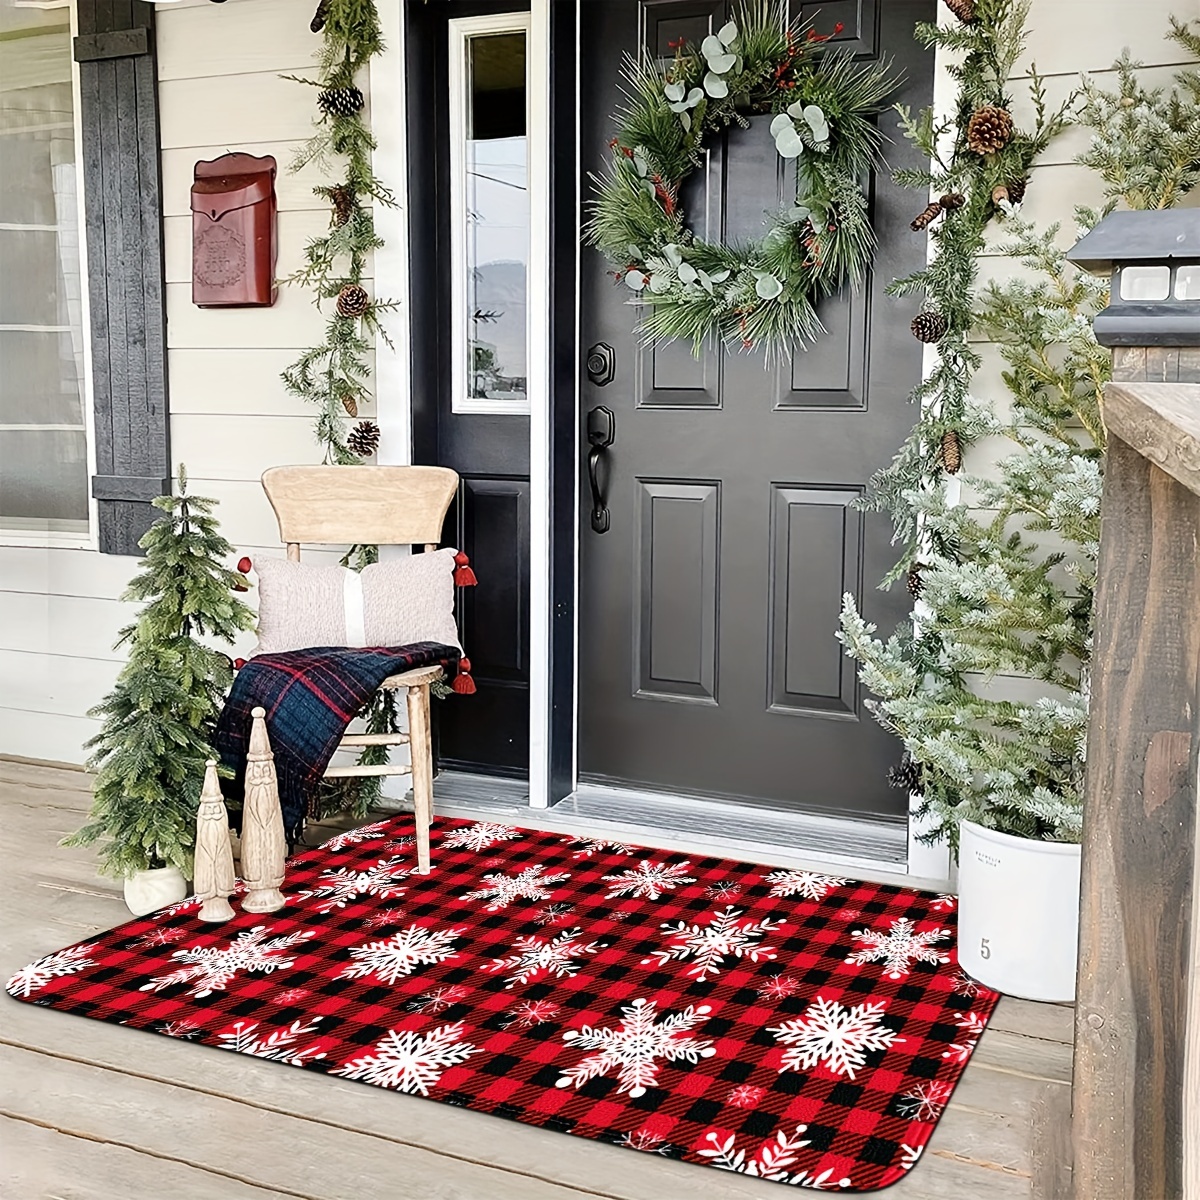 Christmas Door Mat Outdoor for Front Door Decorations , Red Buffalo Plaid  Snowflakes Merry Christmas Doormat,Winter Holiday Welcome Floor Mat Rug